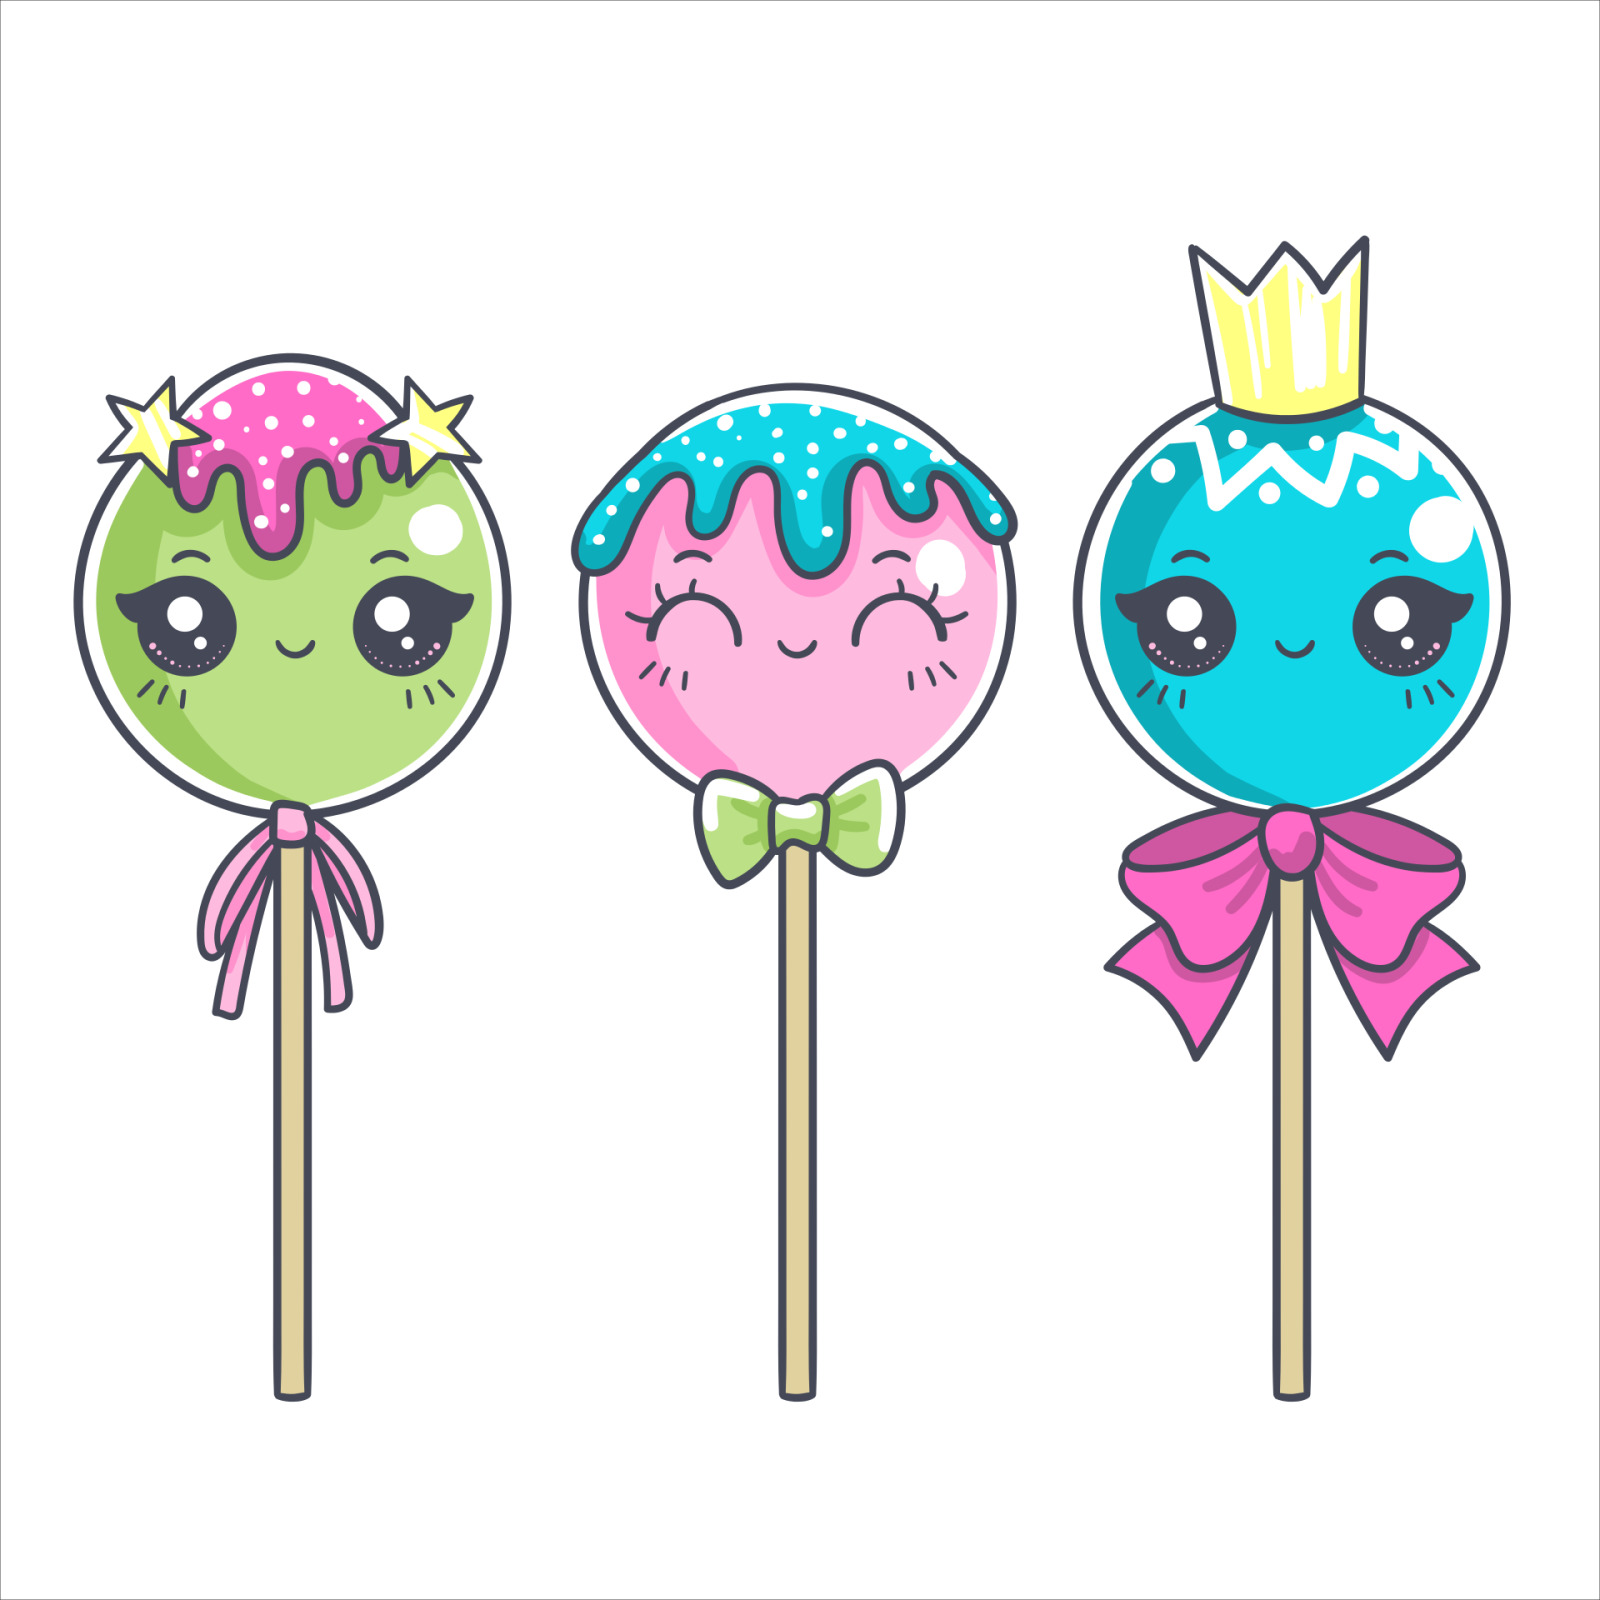 Sweet Lollipop - Original image